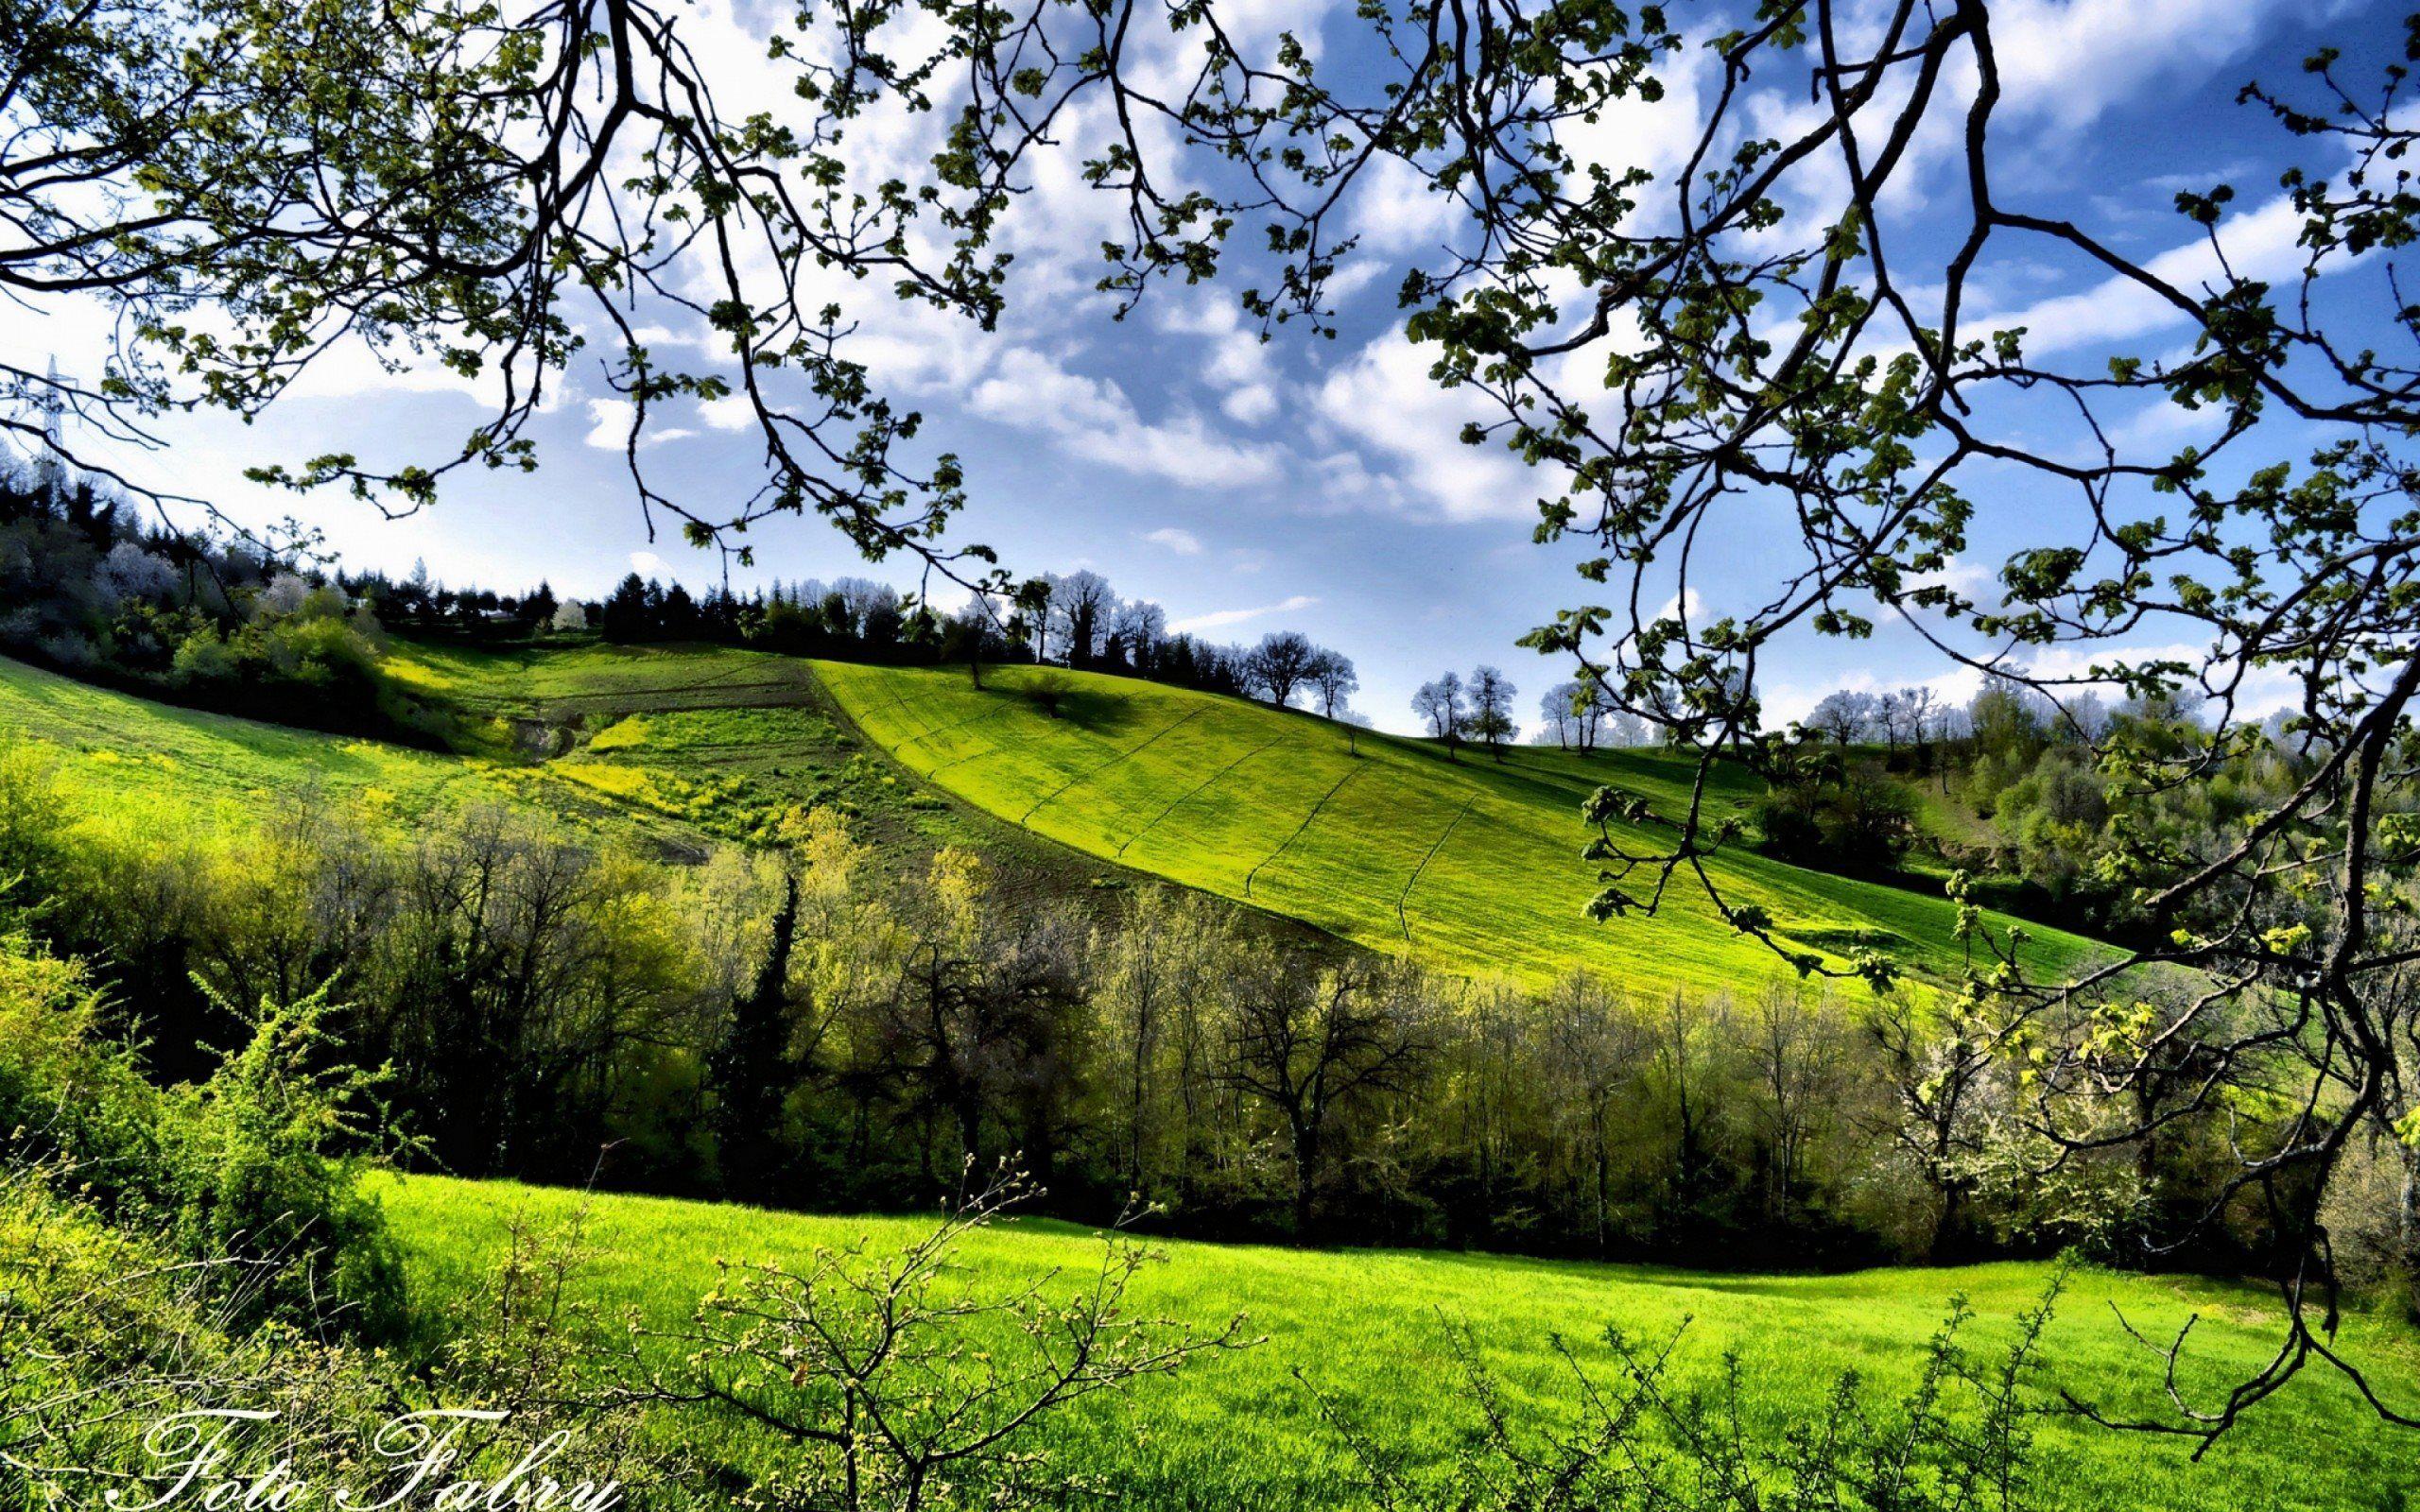 2560x1600 Tải hình nền cánh đồng xanh, mùa xuân, cỏ xanh, thời tiết nắng cho máy tính để bàn với độ phân giải 2560x1600.  Hình nền hình ảnh HD chất lượng cao